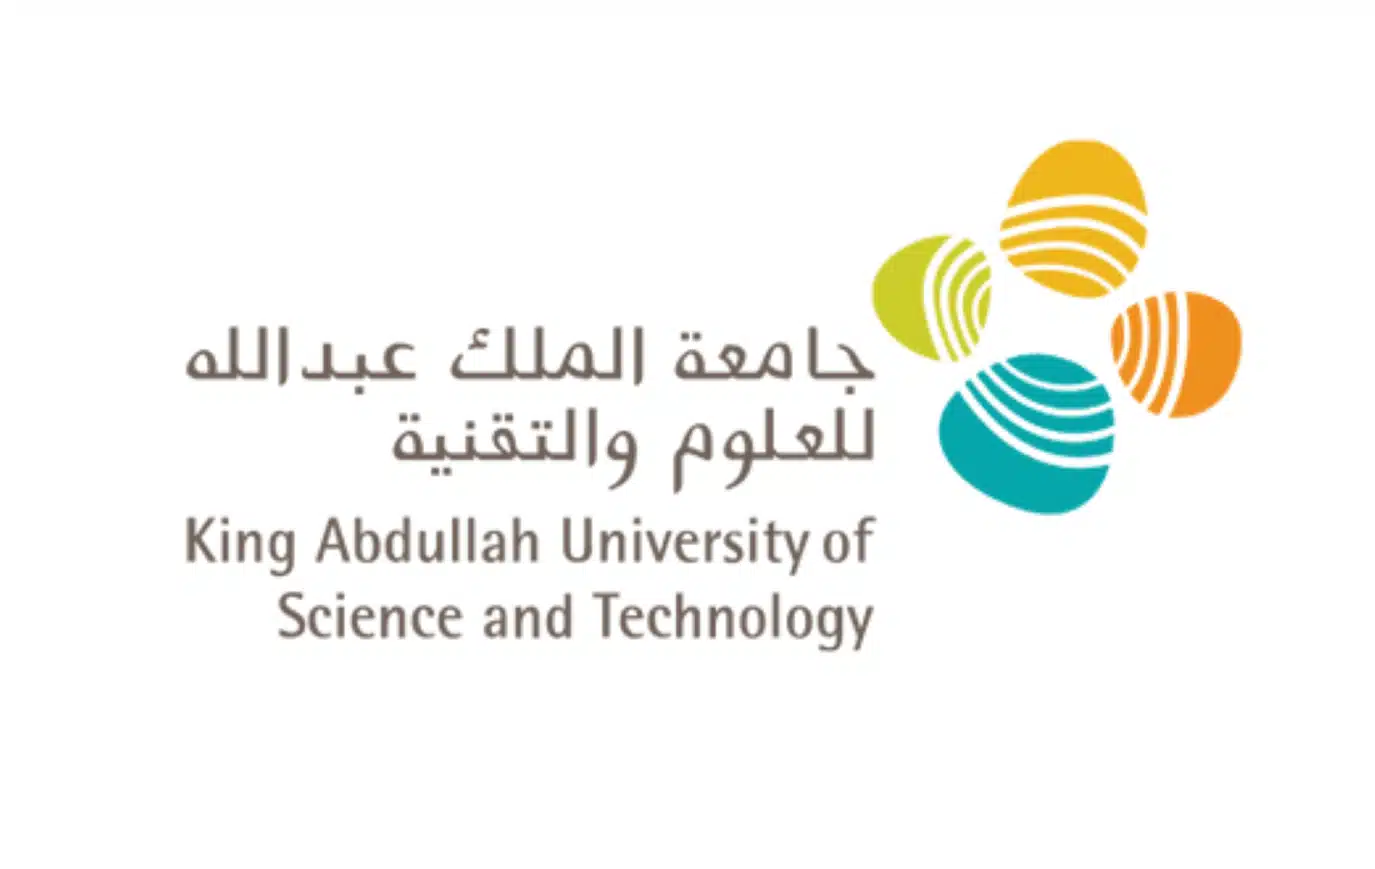 جامعة الملك عبدالله للعلوم والتقنية تستضيف خبراء لمناقشة توحيد السياسات واللوائح بأنظمة النقل بالمملكة